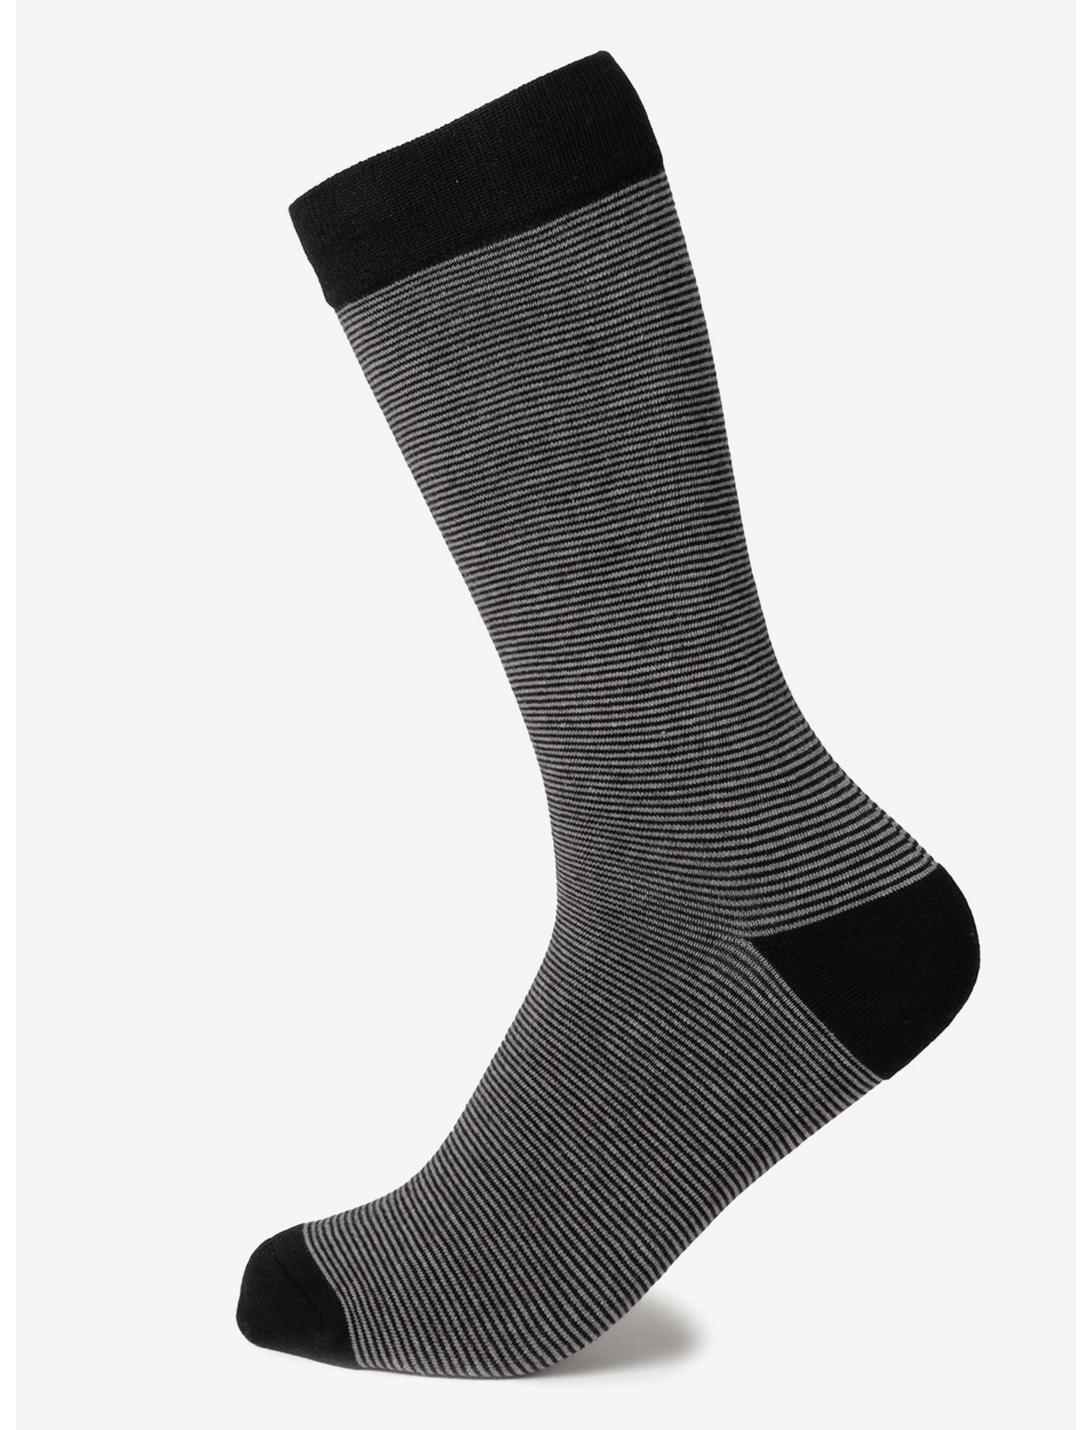 Striped Gray Black Crew Socks, , hi-res